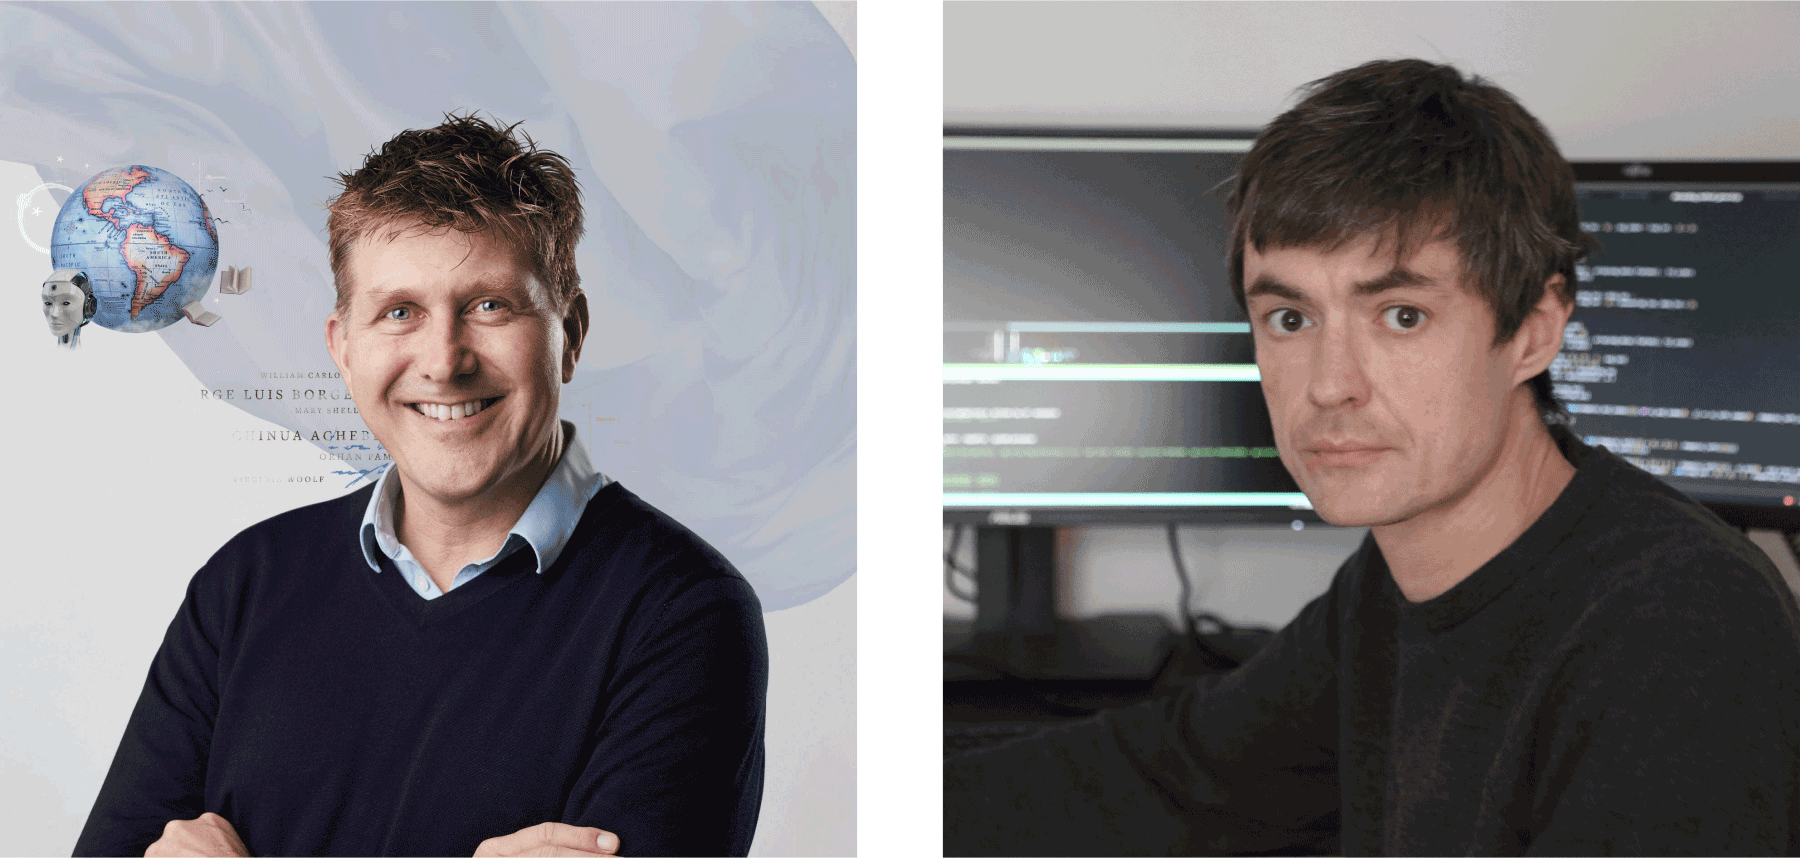 Проектом Fabula-NET занимаются два человека: профессор компаративистики в Орхусском университете (Дания) Мадс Томсен и директор центра цифровых гуманитарных исследований в том же университете Кристофер Ниелбо. Фото из личных архивов